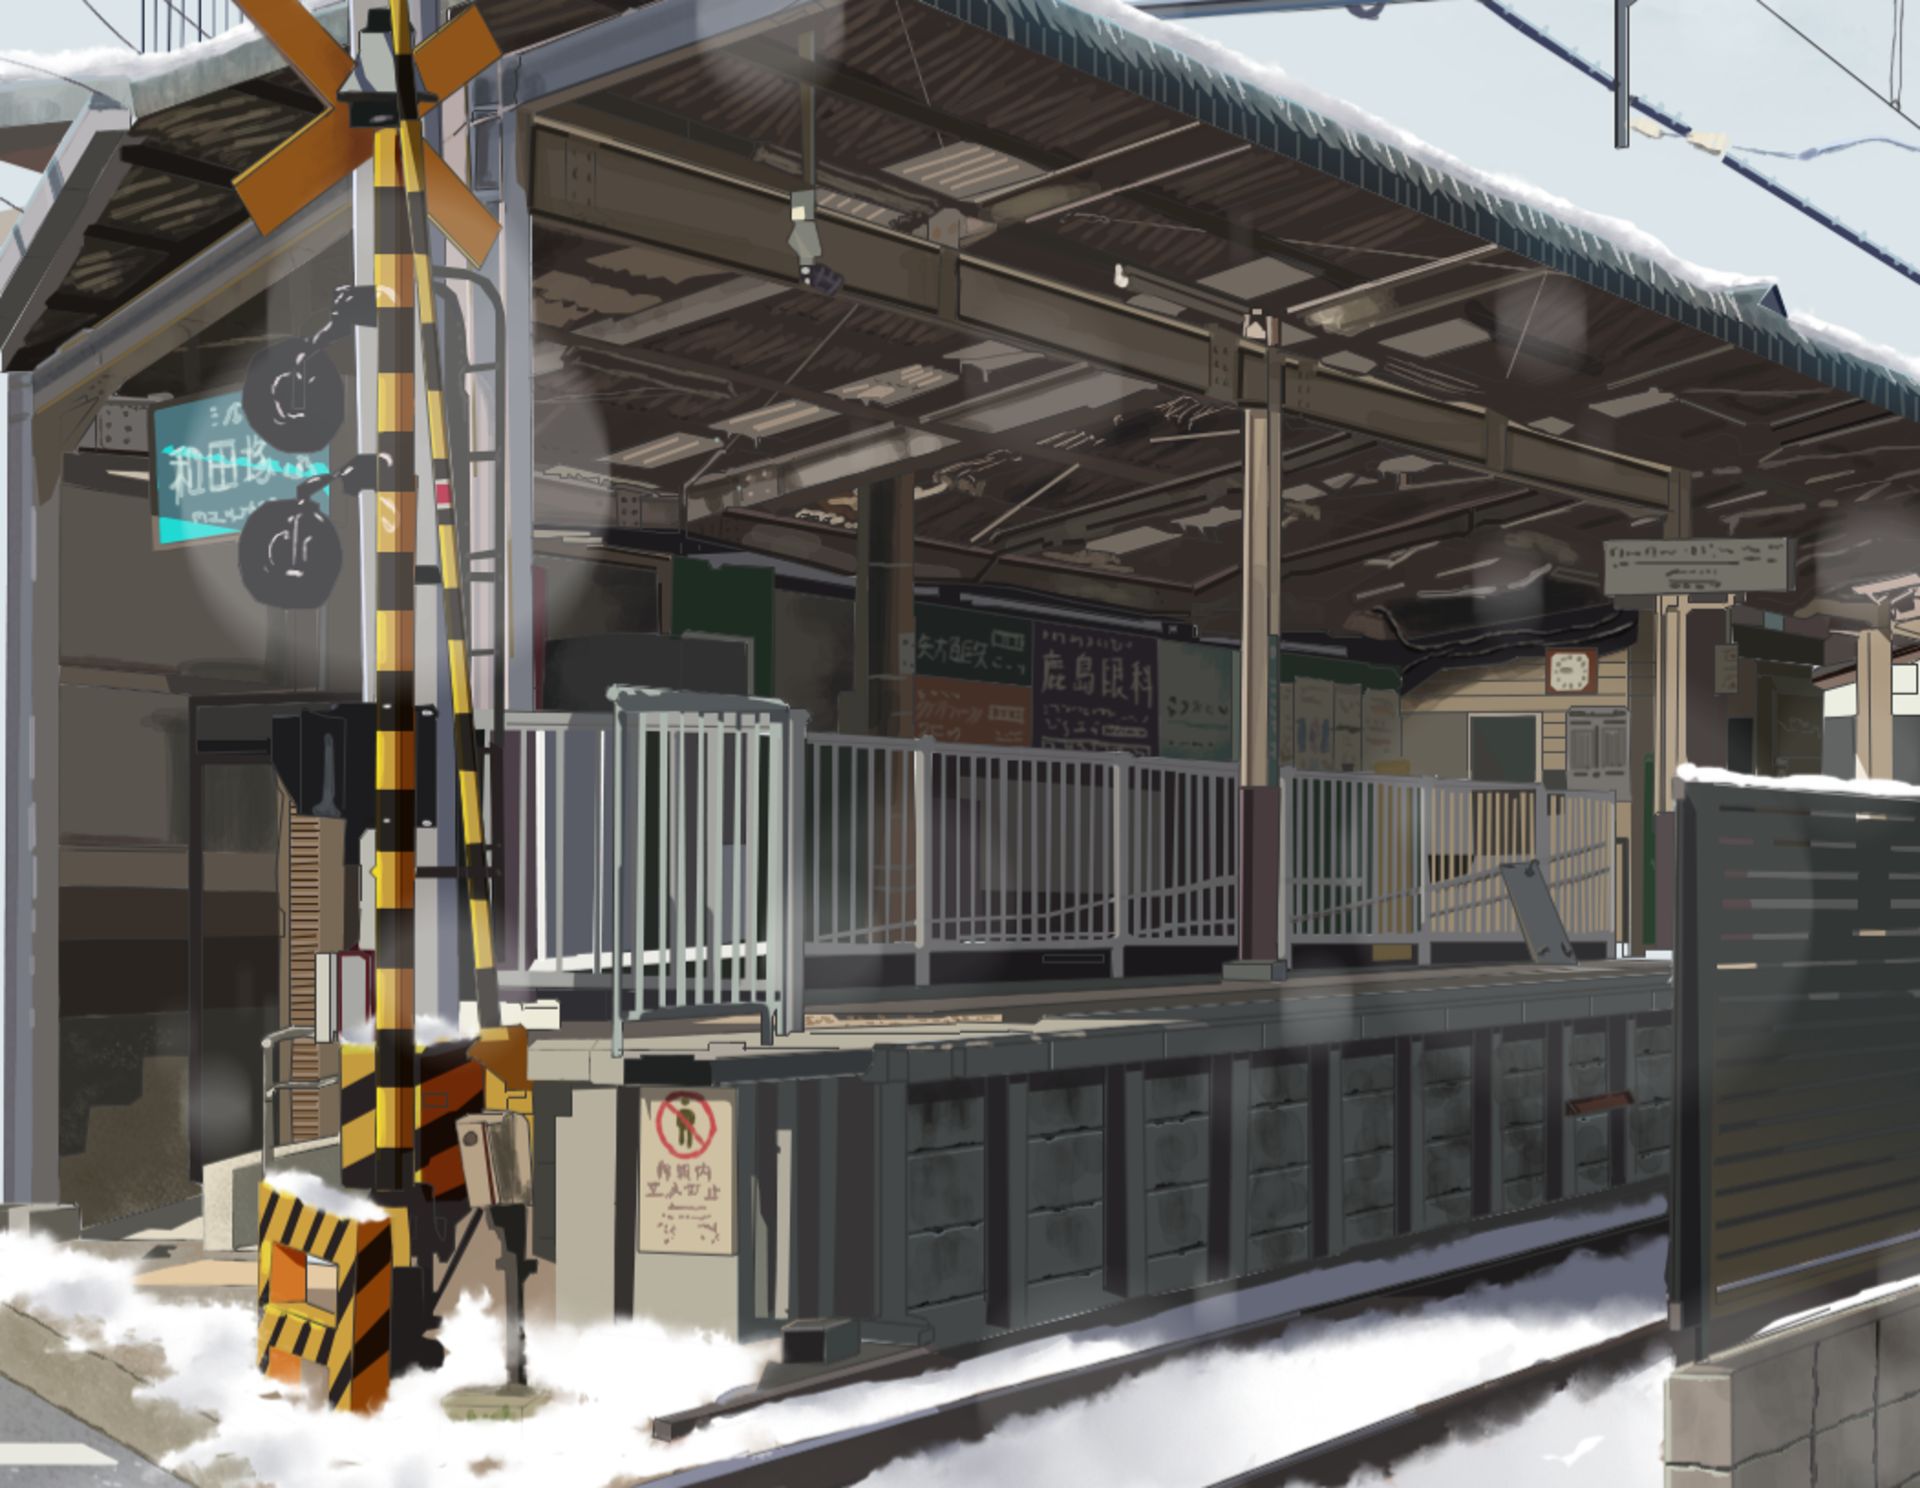 Скачать обои бесплатно Аниме, Снег, Железная Дорога, Железнодорожный Вокзал картинка на рабочий стол ПК